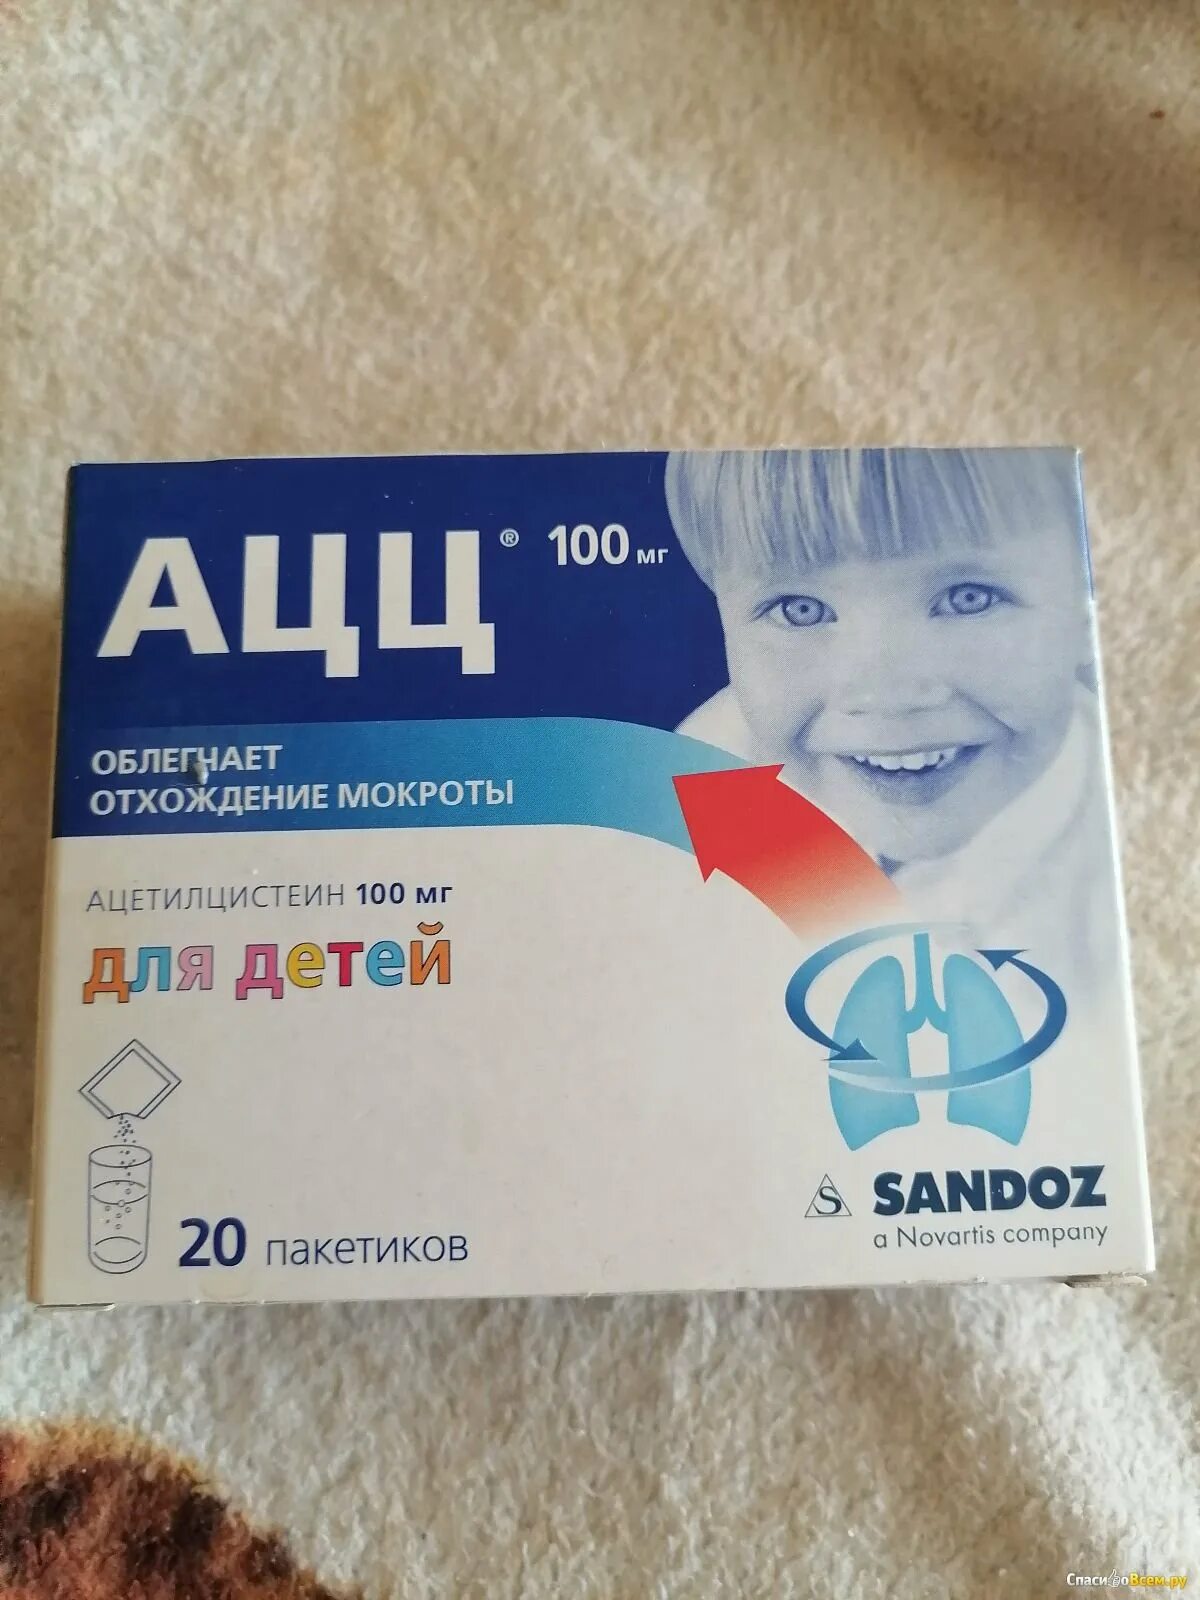 Отхождение мокроты при сухом кашле. Лекарство для отхождения мокроты у детей. Детские таблетки для отхождения мокроты. Для отхождения мокроты у детей в таблетках. Ацц для детей таблетки.